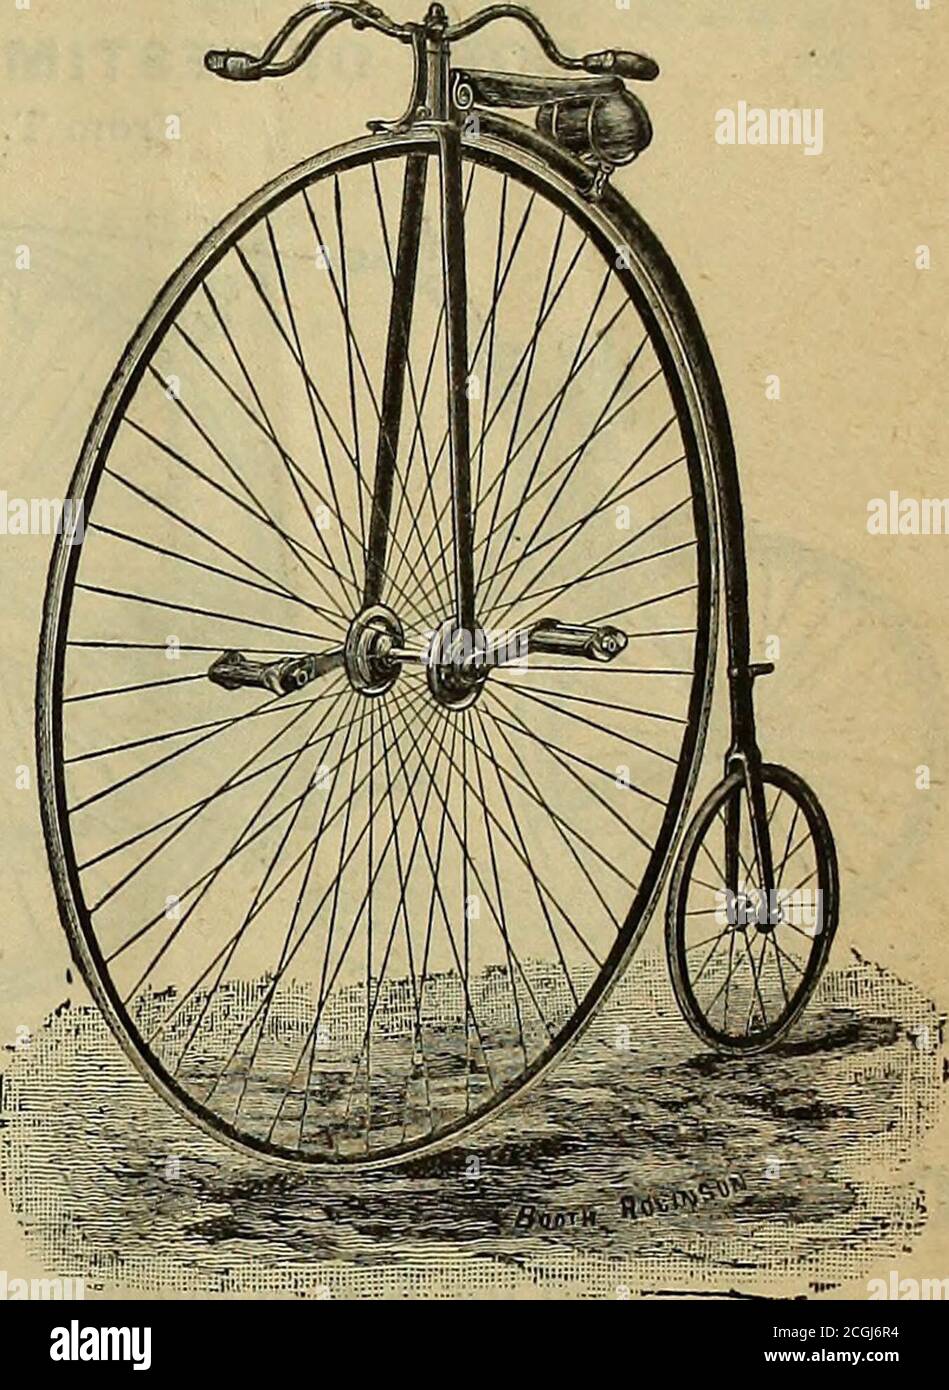 Il mondo ciclistico . IL BREVETTO OTTO Carrugated PNEUMATICO A FILO è usato  su tutti i nostri 1887 APOLLOS, SFIDE, S. S. TRICICLI, TANDEM, E SICUREZZE.  Testa a sfera, maniglie a